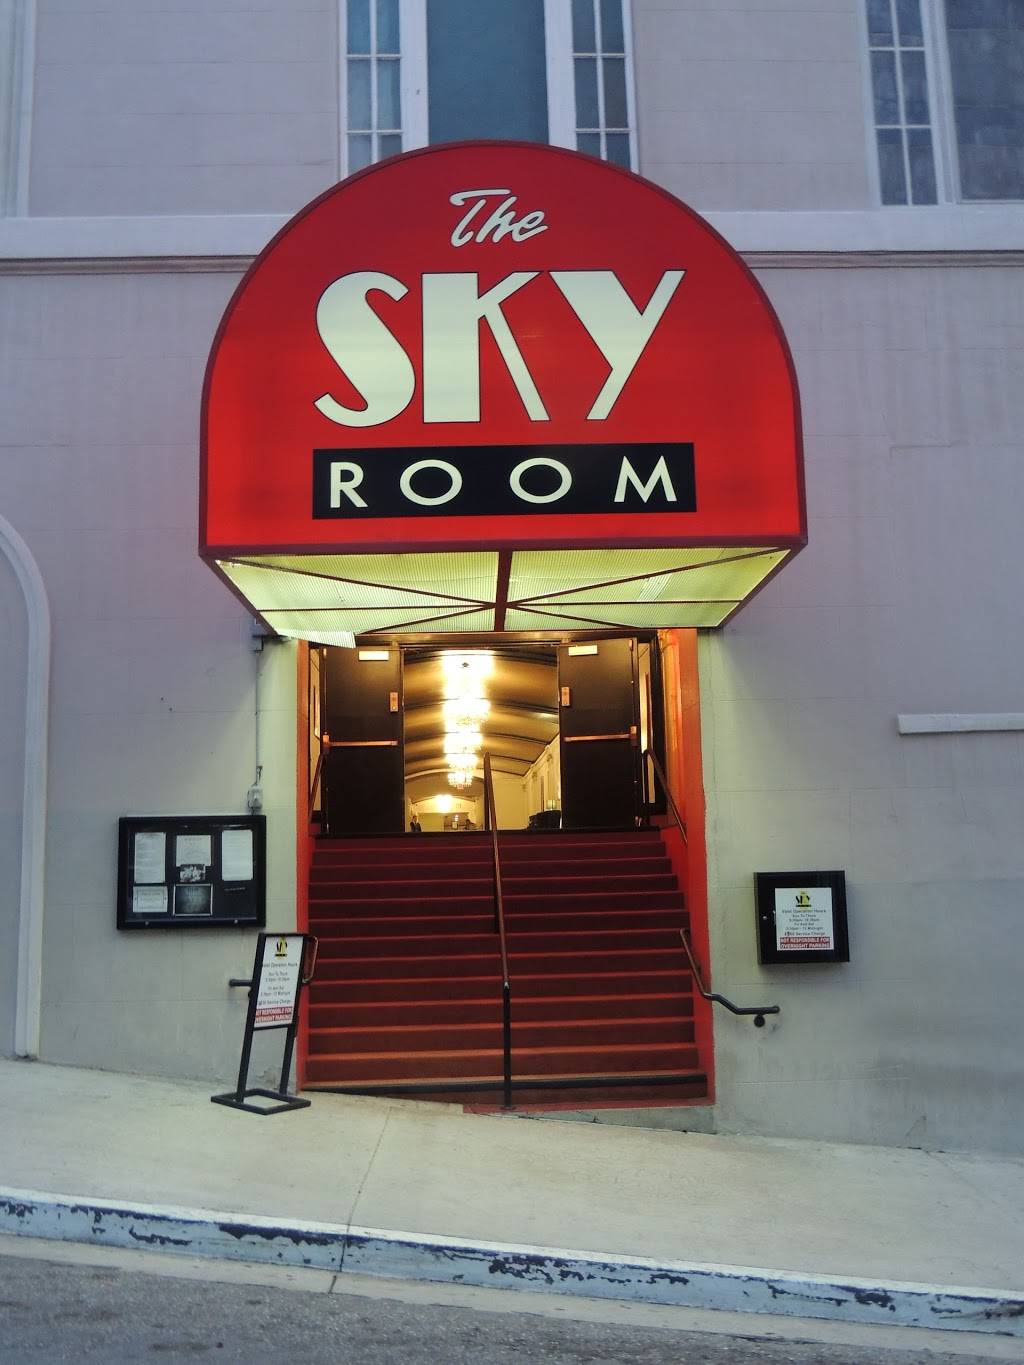 The Sky Room Restaurant 40 S Locust Ave Long Beach Ca